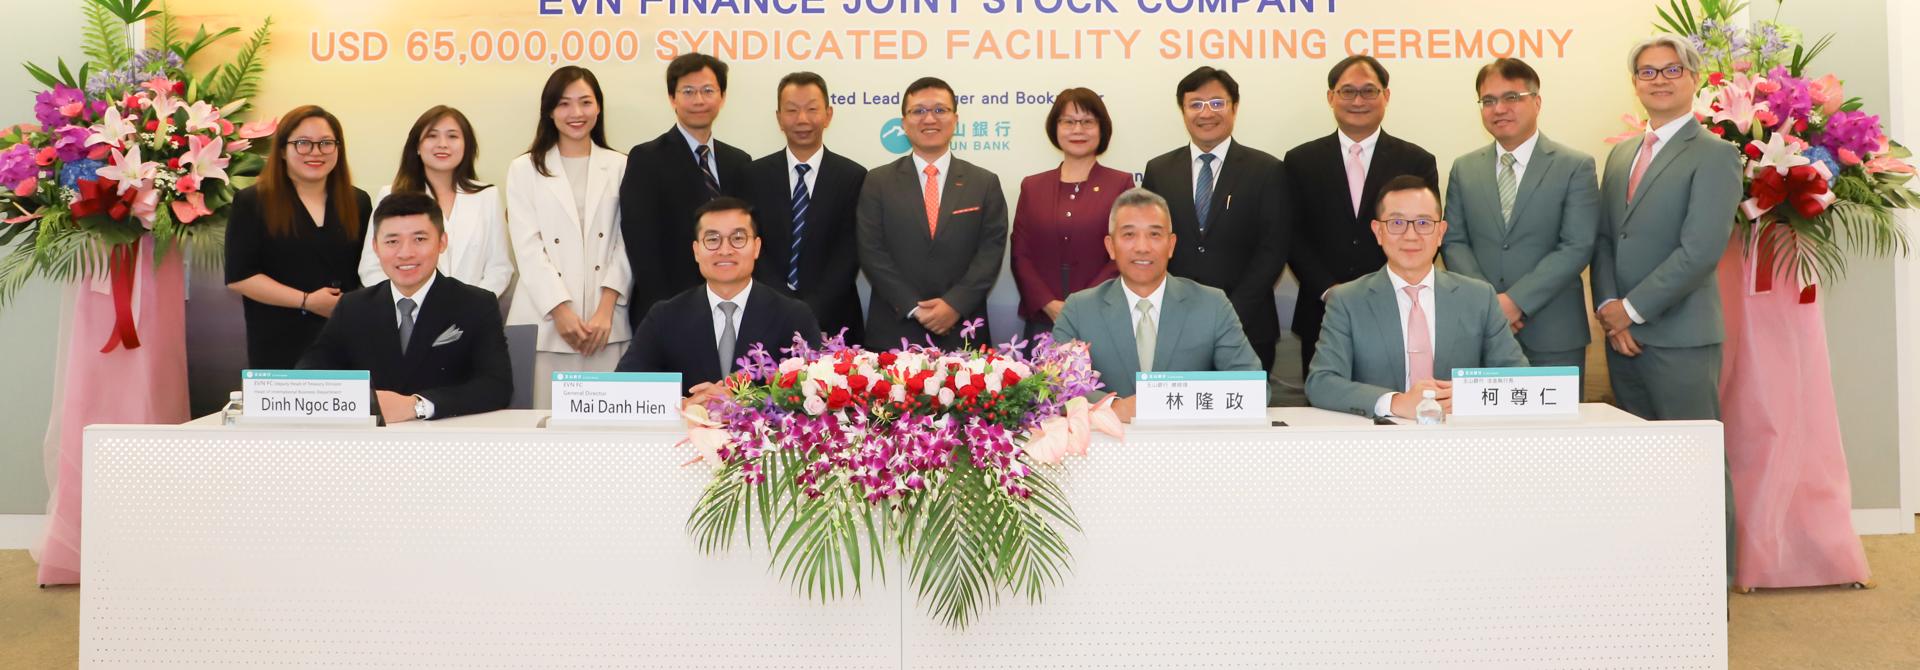 EVNFinance ký kết thành công gói vay hợp vốn với 6 ngân hàng hàng đầu Đài Loan